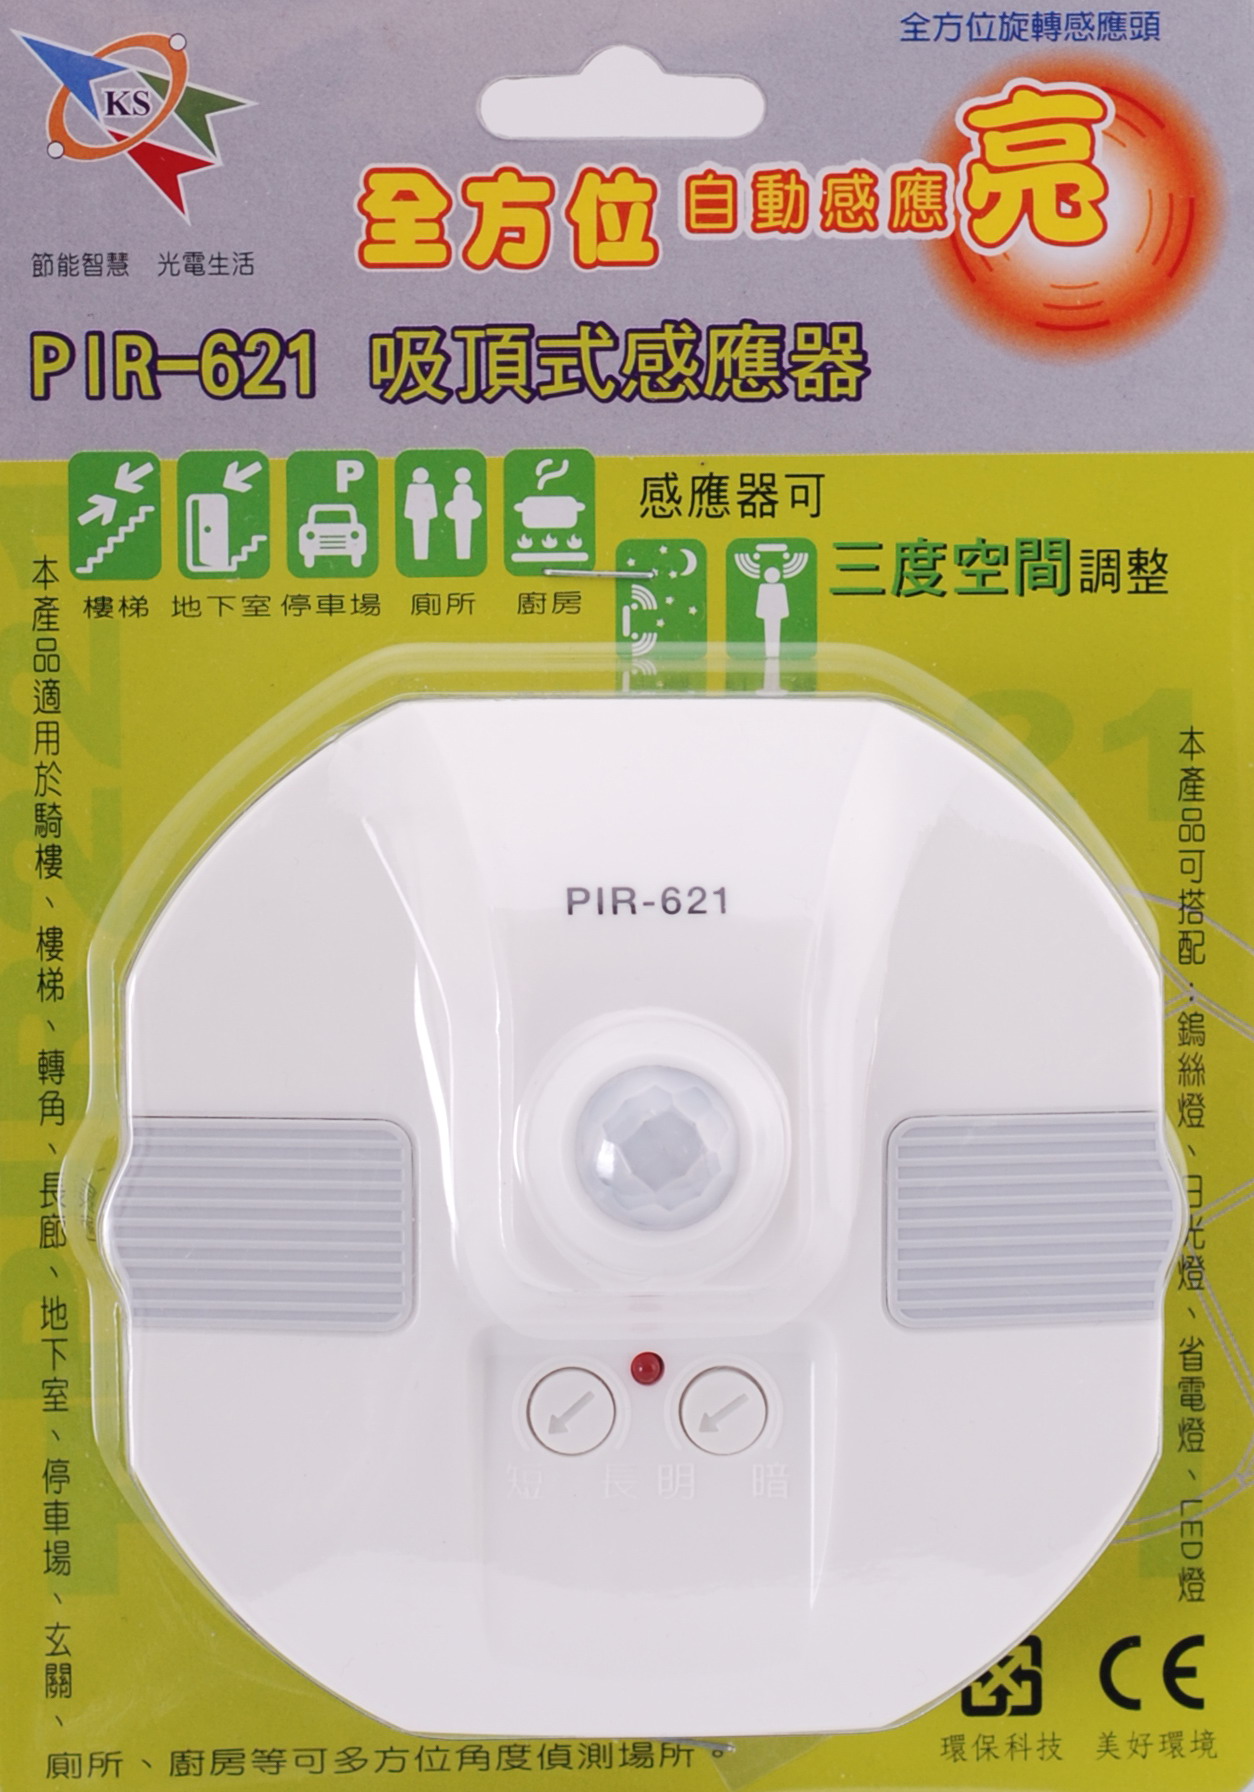 PIR-621 吸頂式感應器